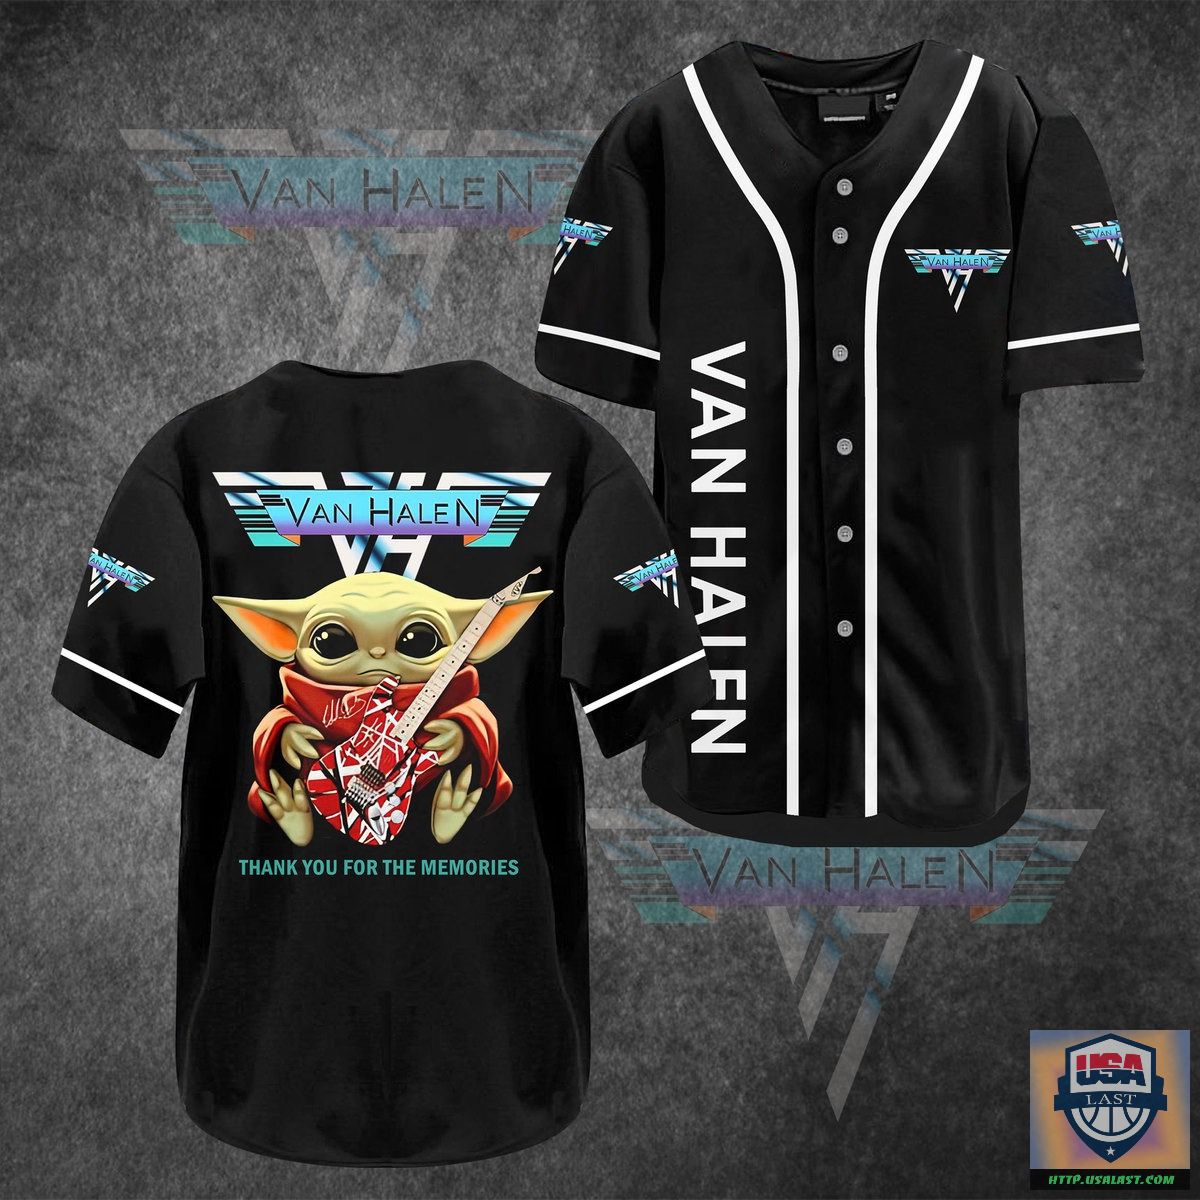 Van Halen Baby Yoda Baseball Jersey Shirt – Usalast